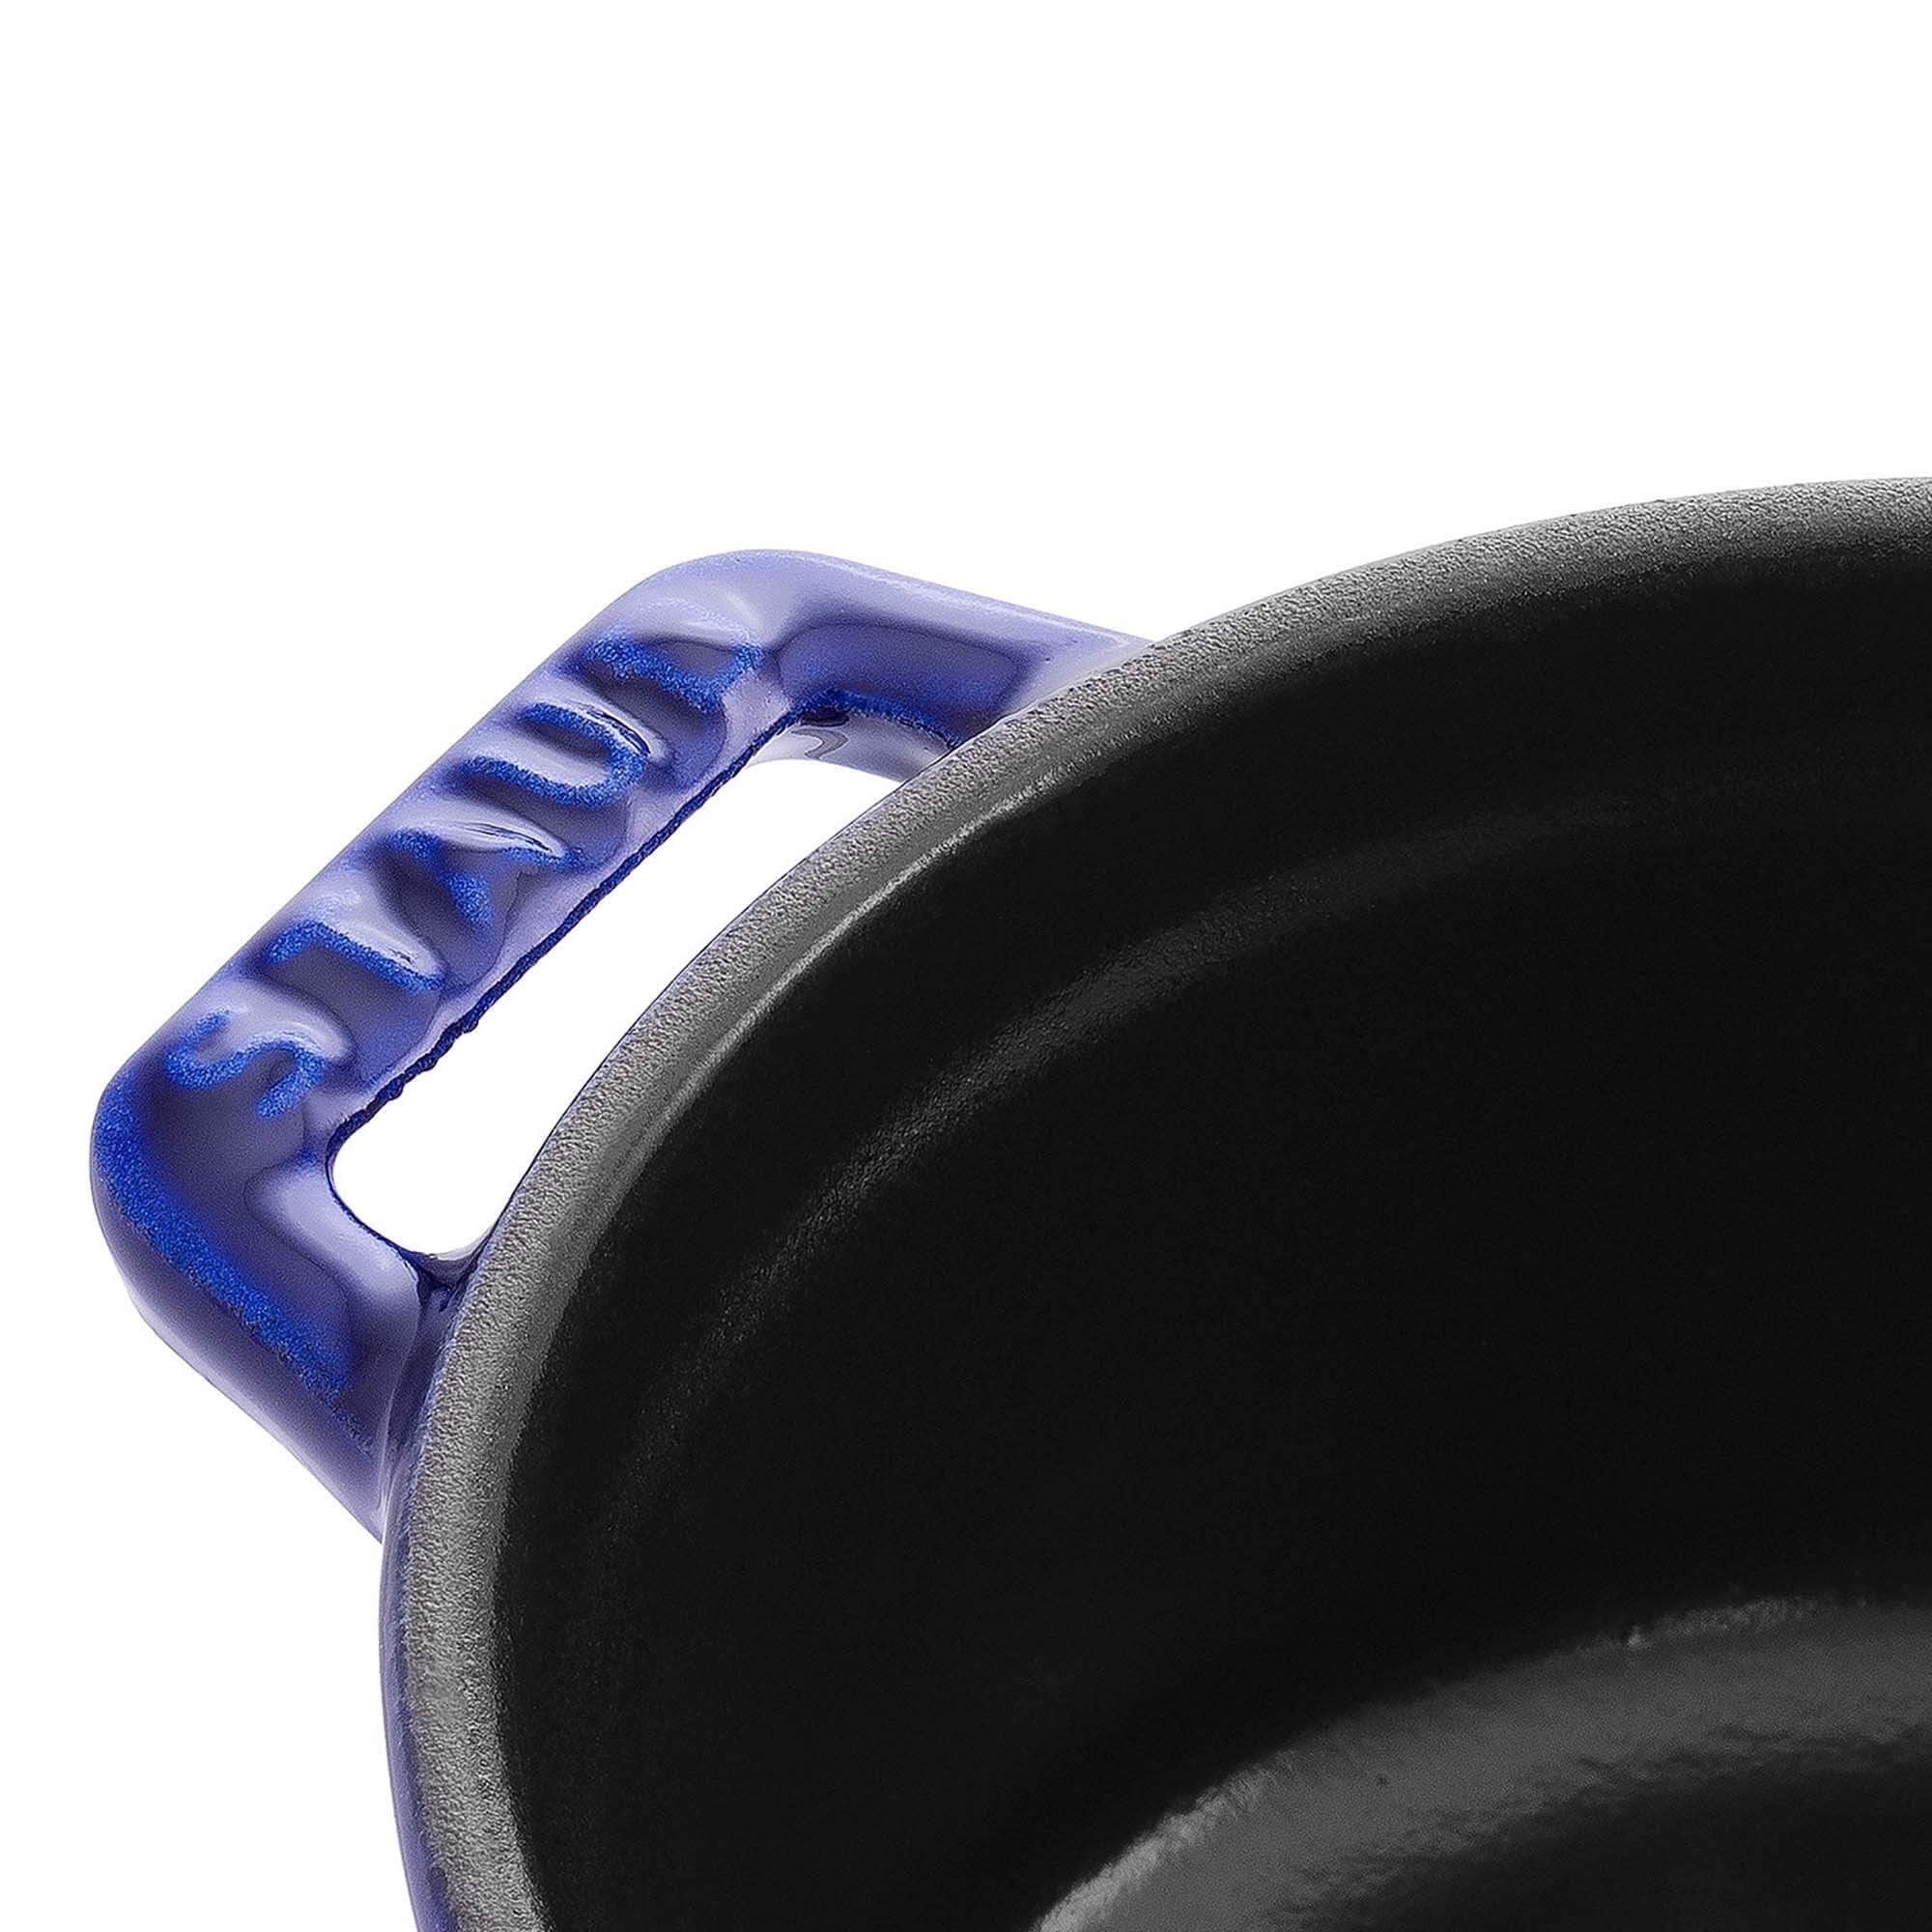 Staub 9 Qt. Cast Iron Round Dutch Oven in Dark Blue – Premium Home